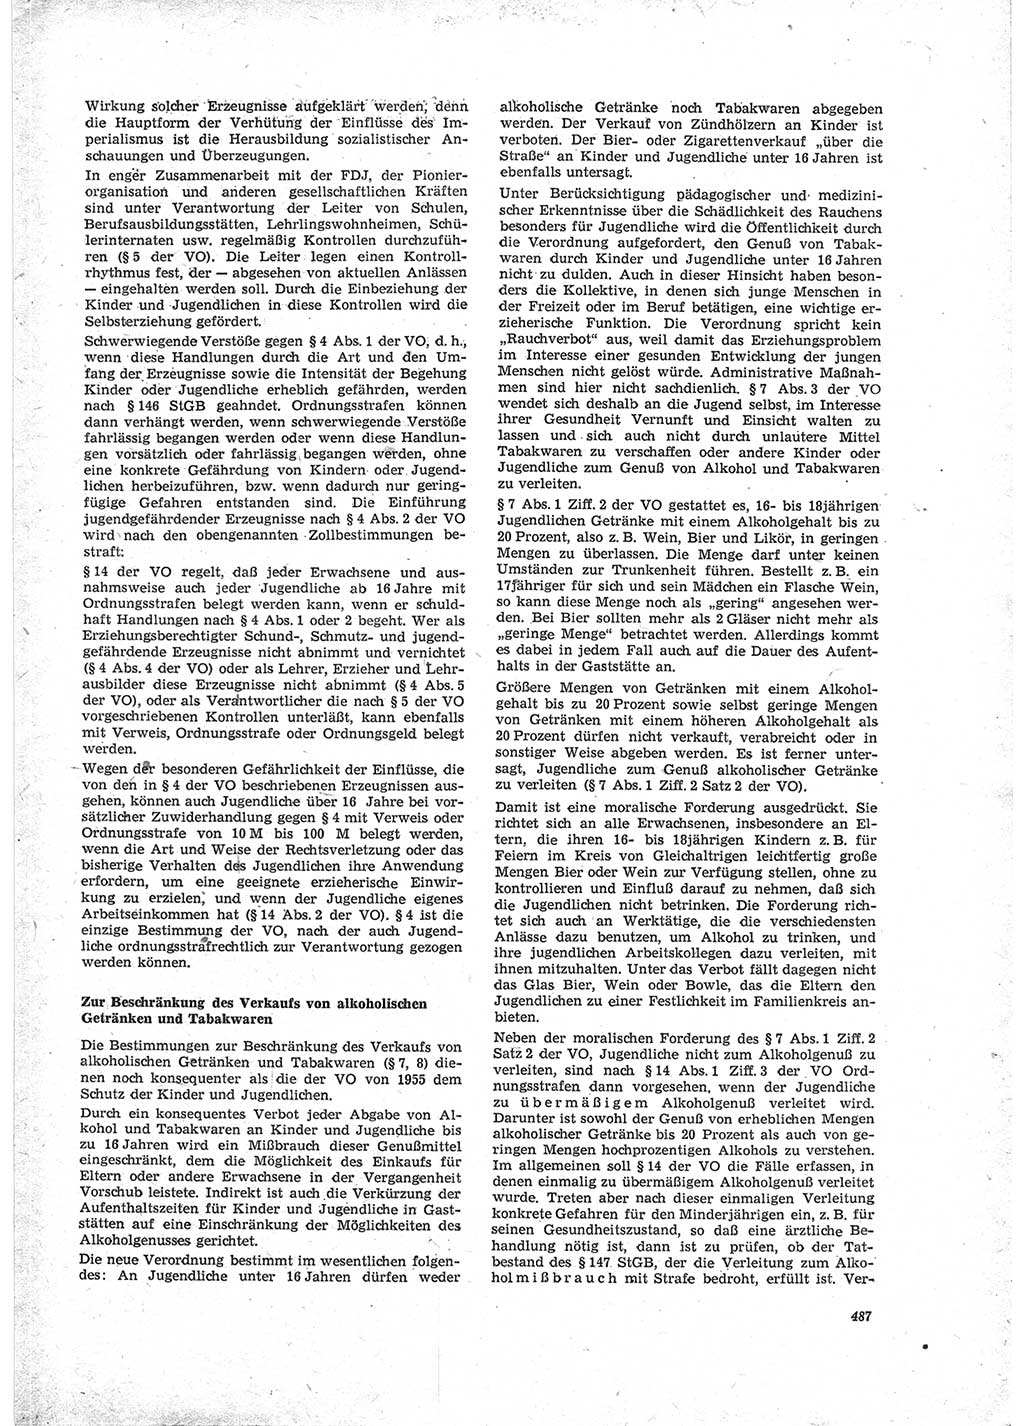 Neue Justiz (NJ), Zeitschrift für Recht und Rechtswissenschaft [Deutsche Demokratische Republik (DDR)], 23. Jahrgang 1969, Seite 487 (NJ DDR 1969, S. 487)